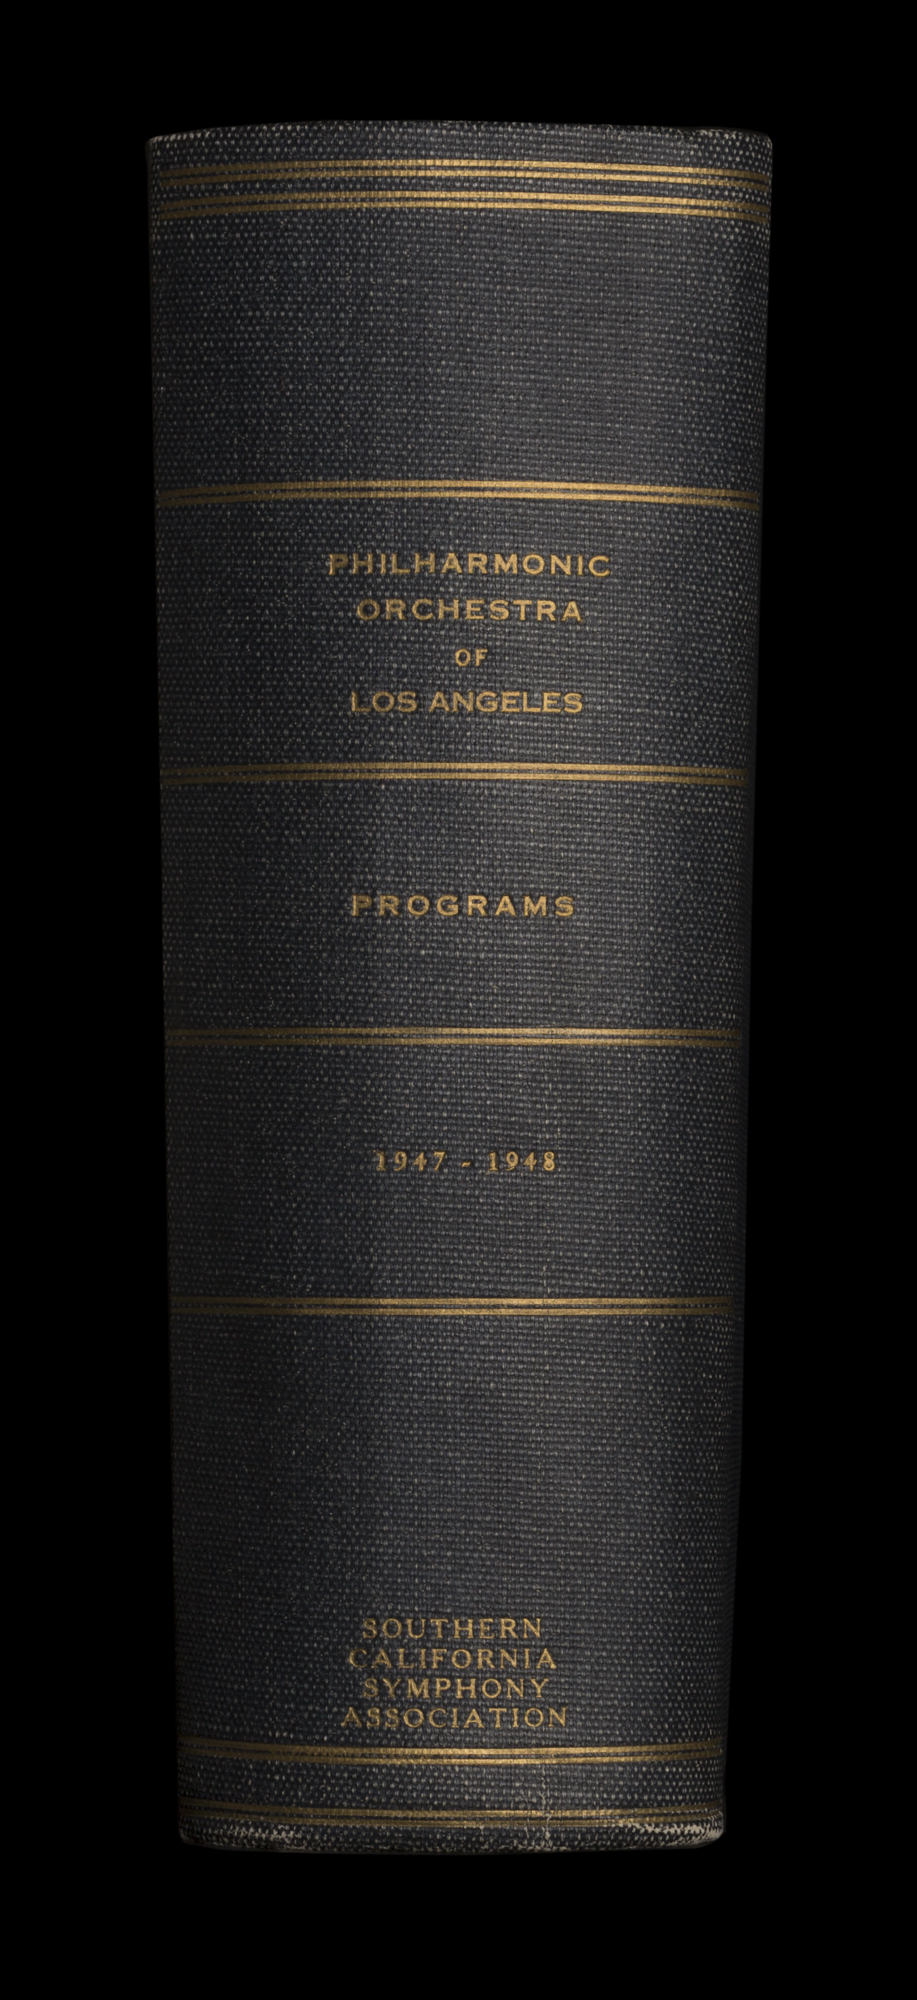 LAPO_ProgramBook_Spine_1947-1948.jpg